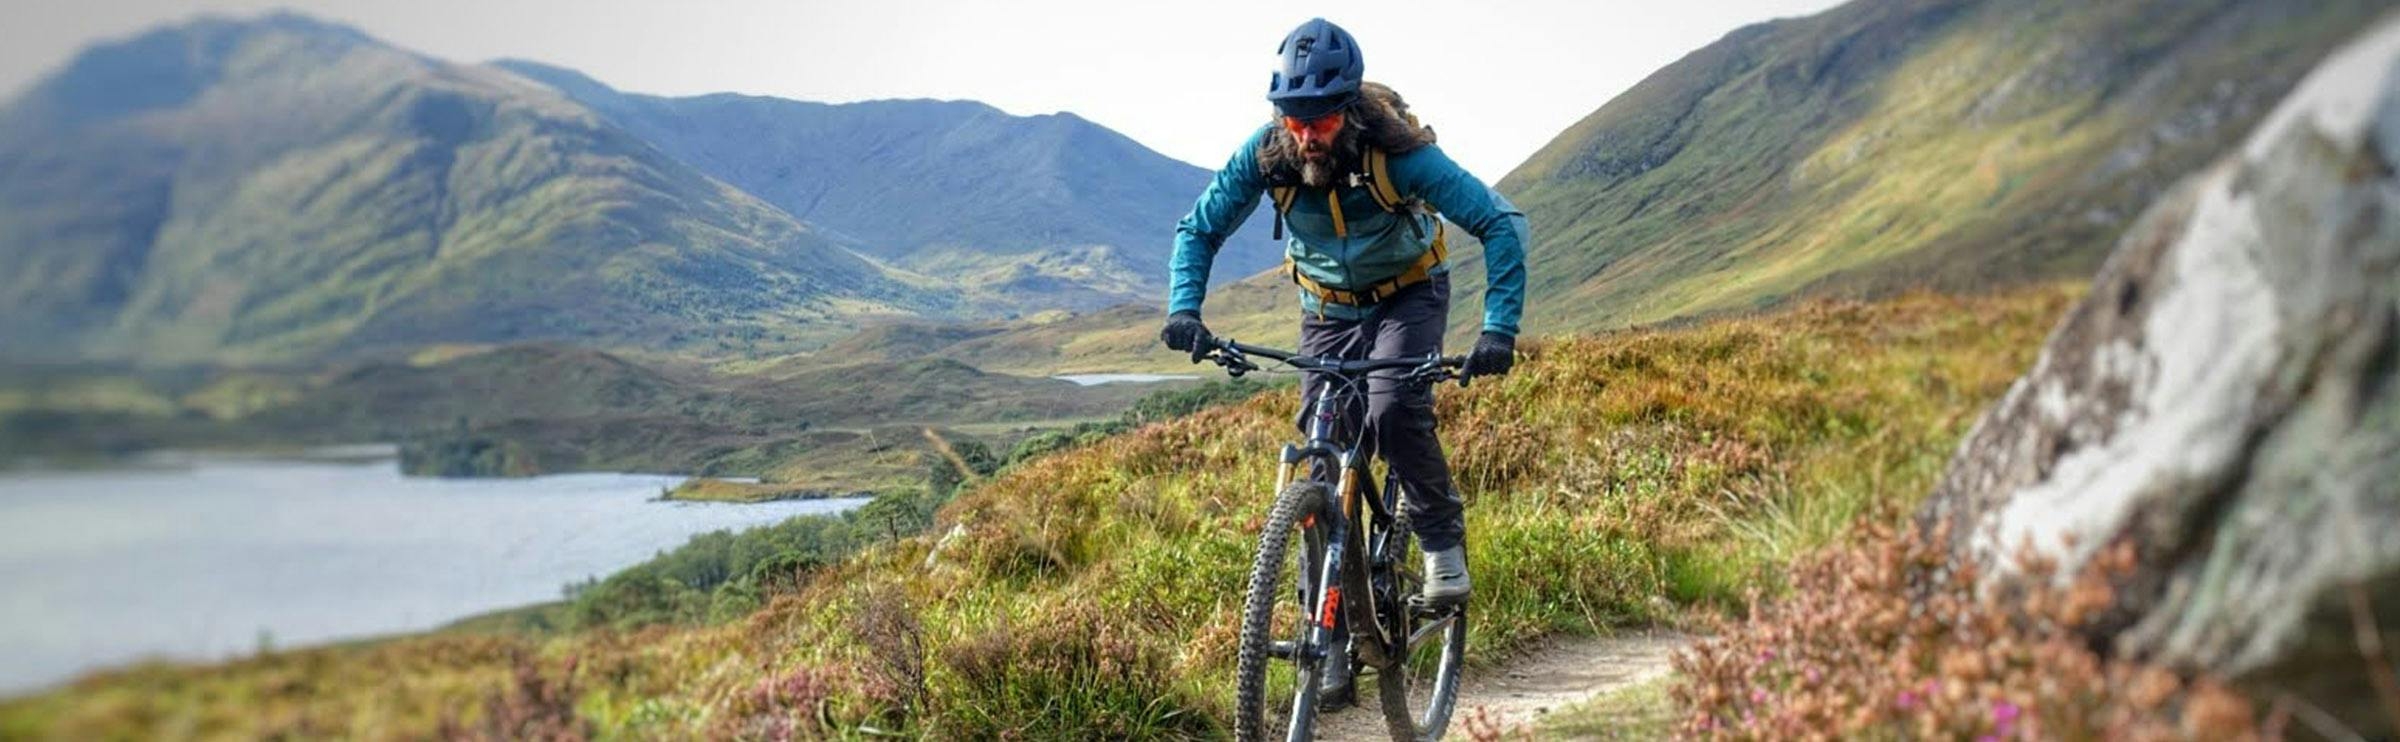 Andy McKenna mit seinem Santa Cruz Mountain Bike in Schottland. 